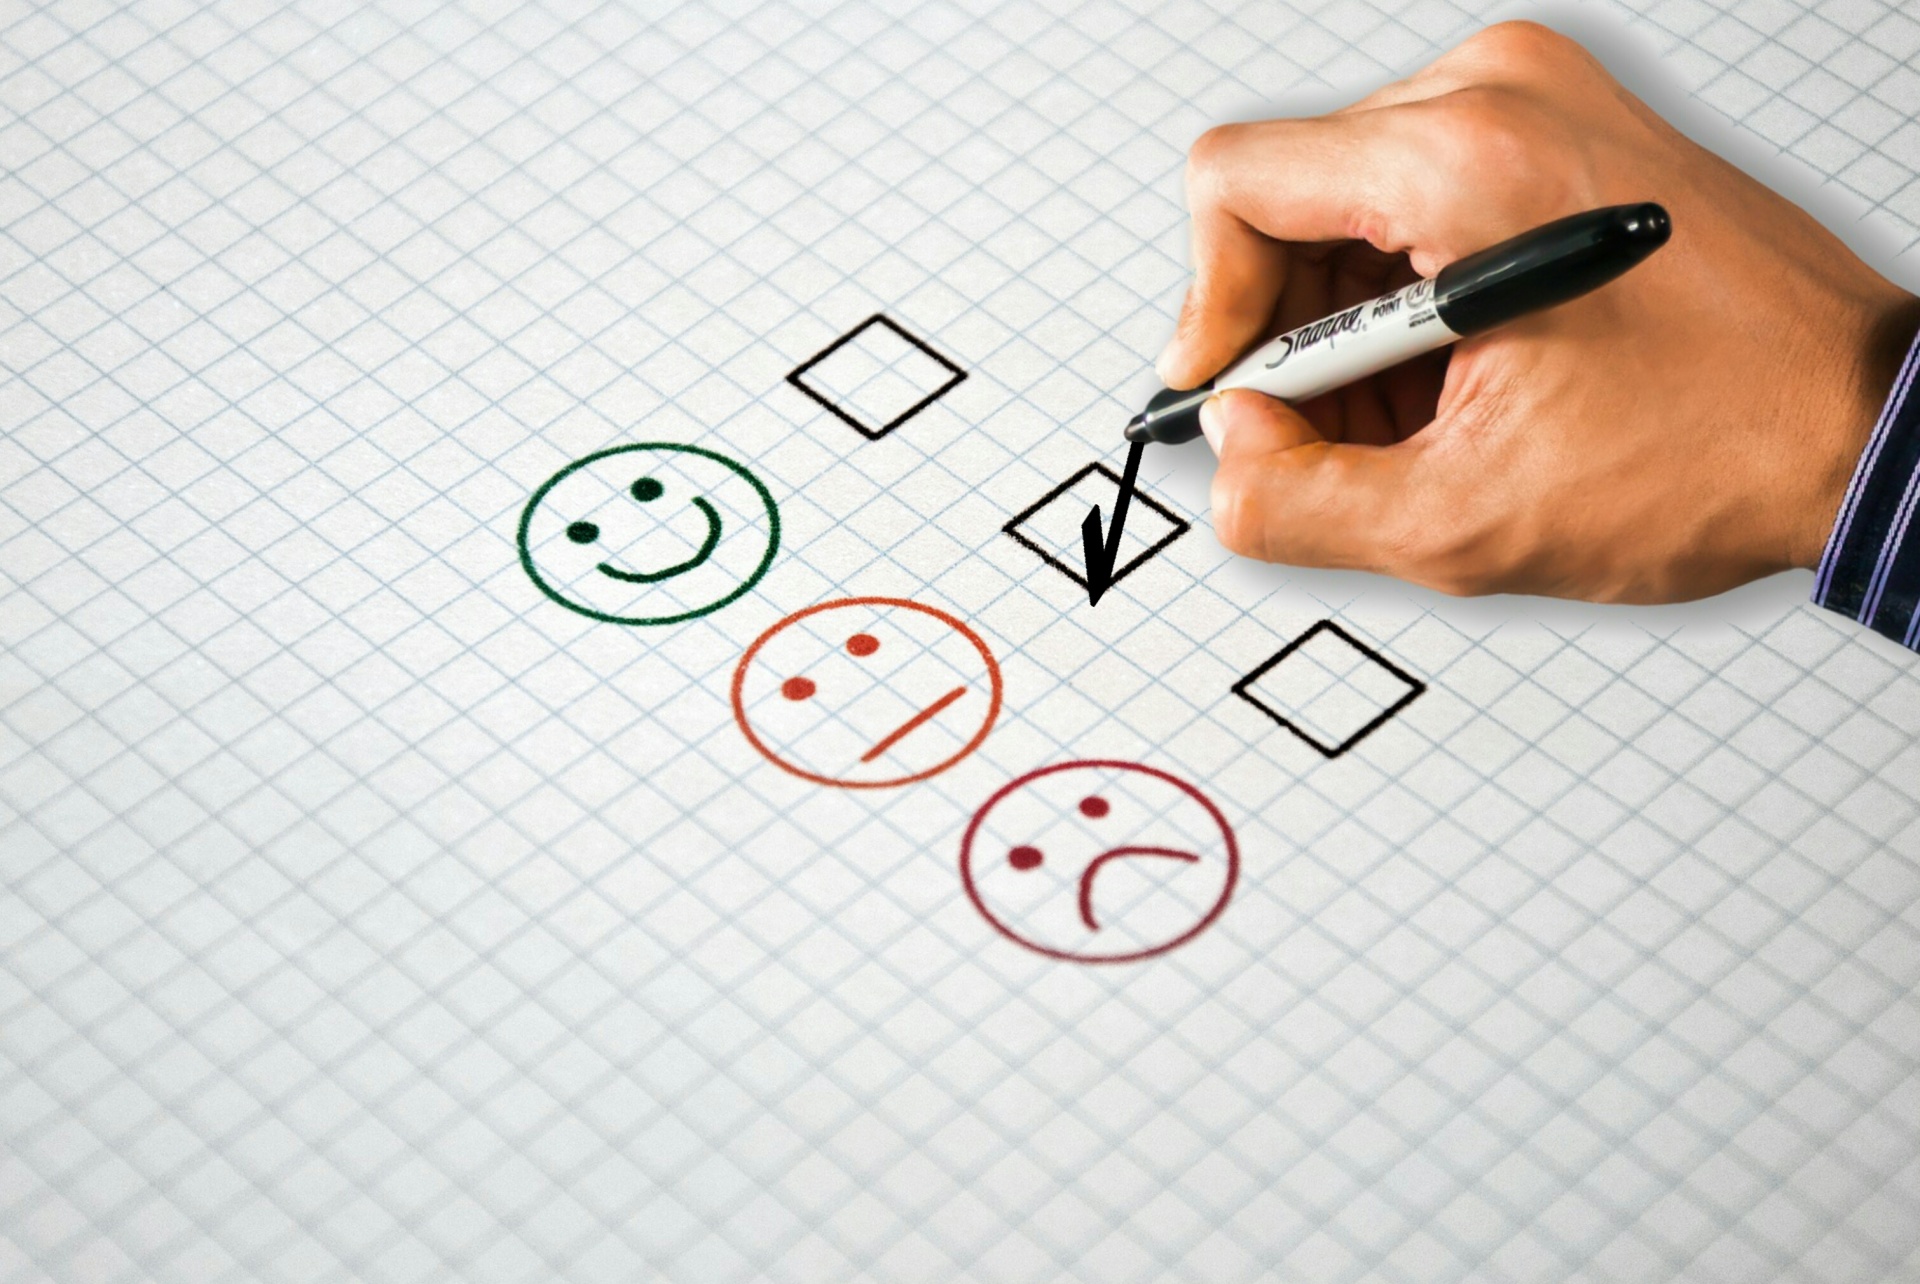 Customer Satisfaction Survey